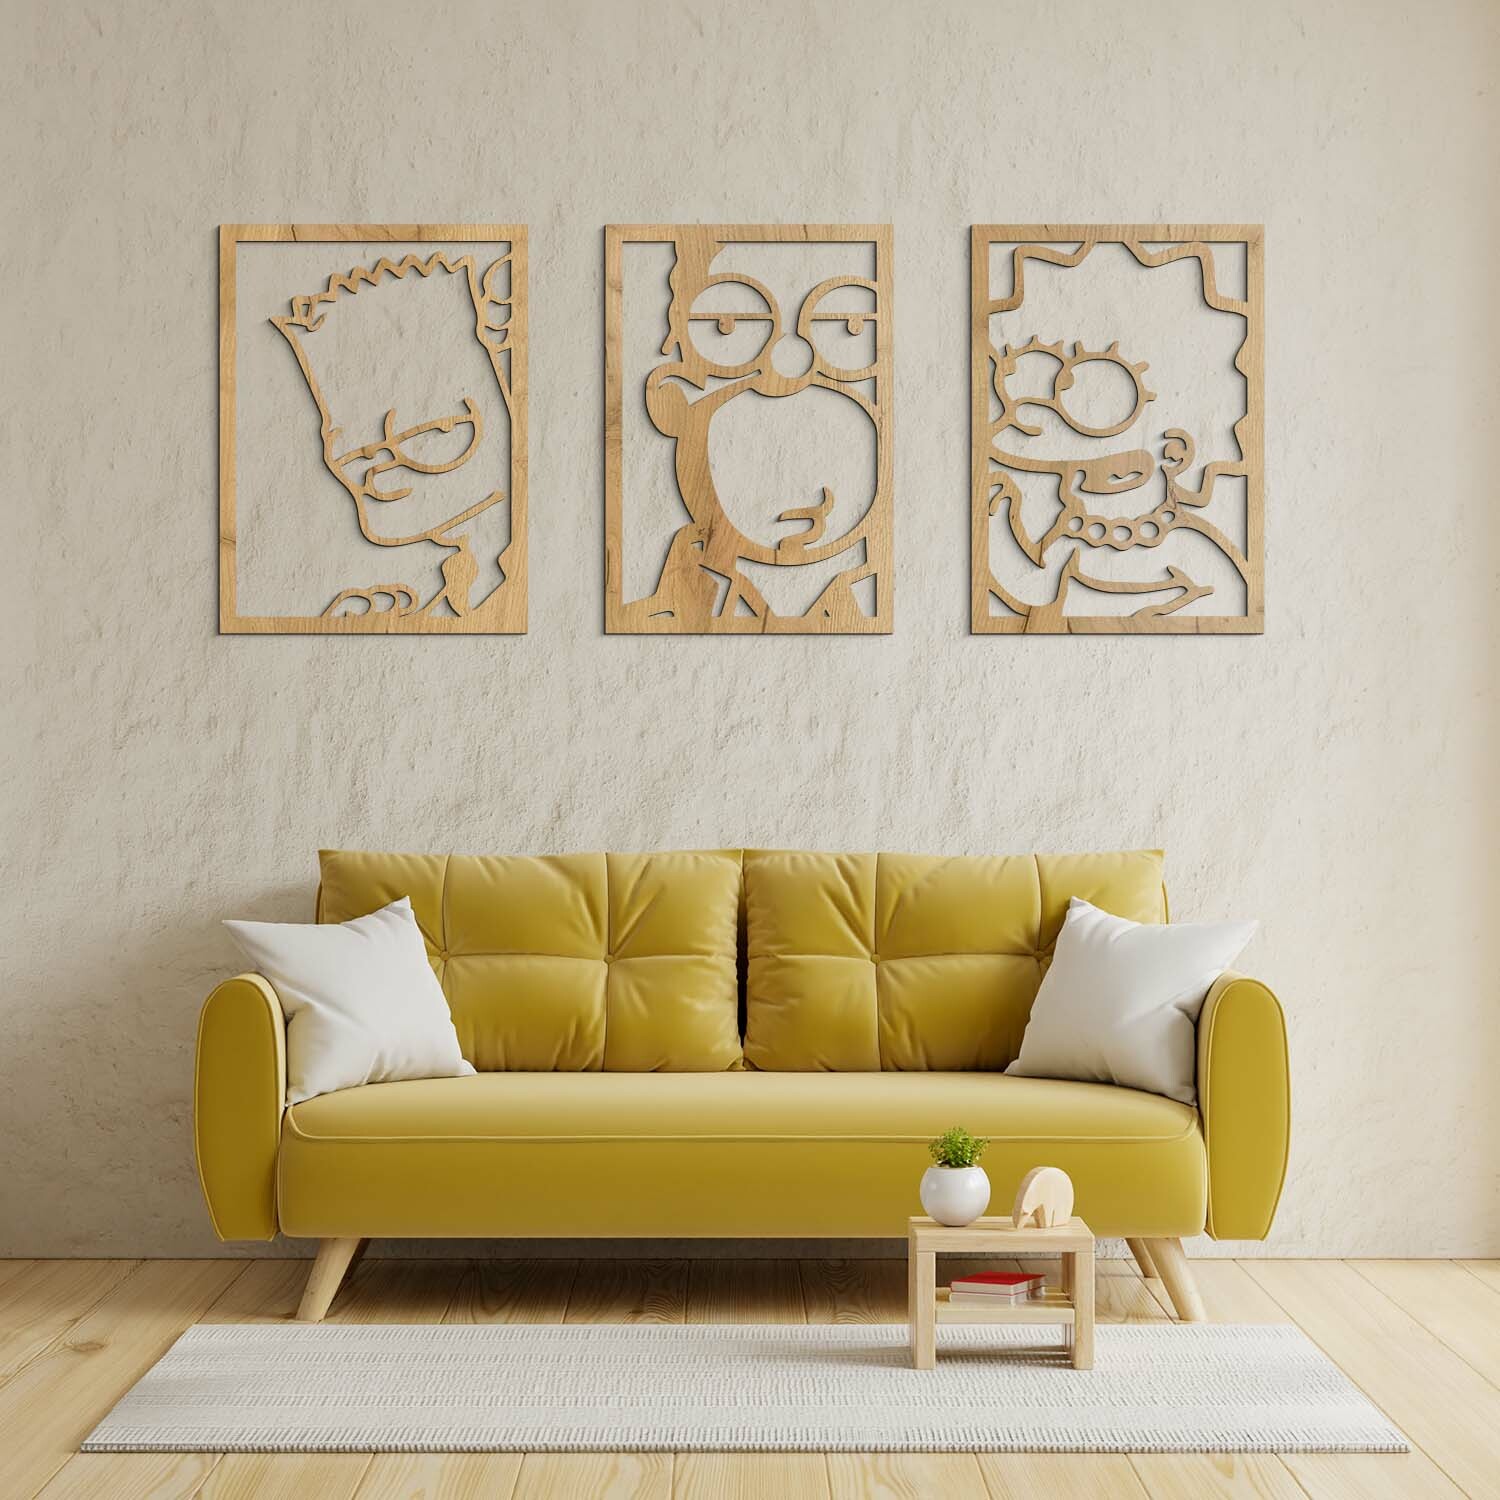 3-dielny drevený obraz - The Simpsons, Dub zlatý